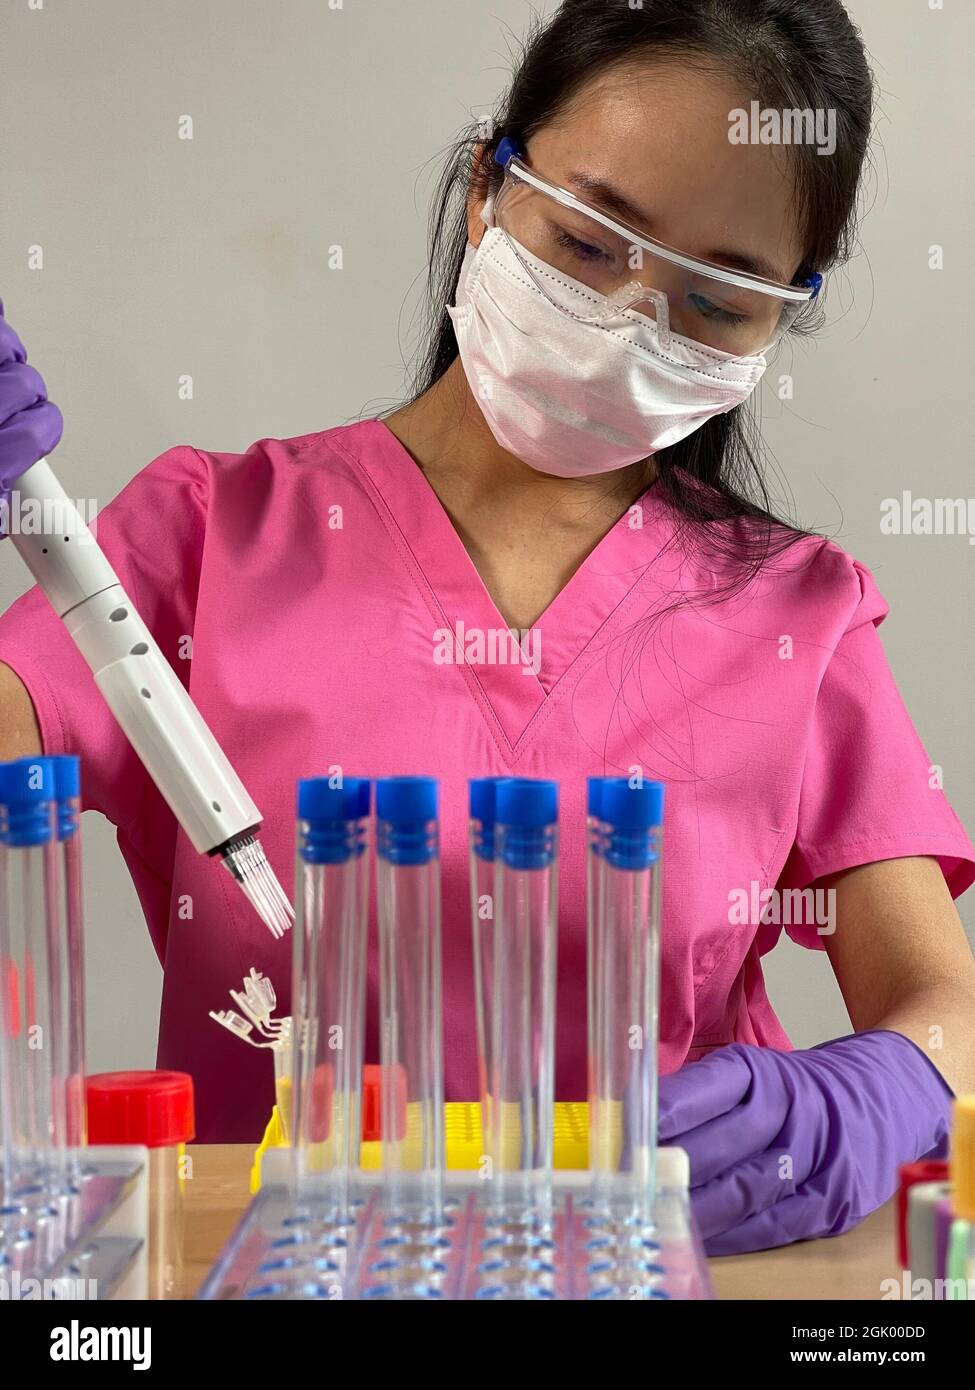 Femme injectant une substance dans un tube à l'aide d'une pipette multicanaux. Banque D'Images